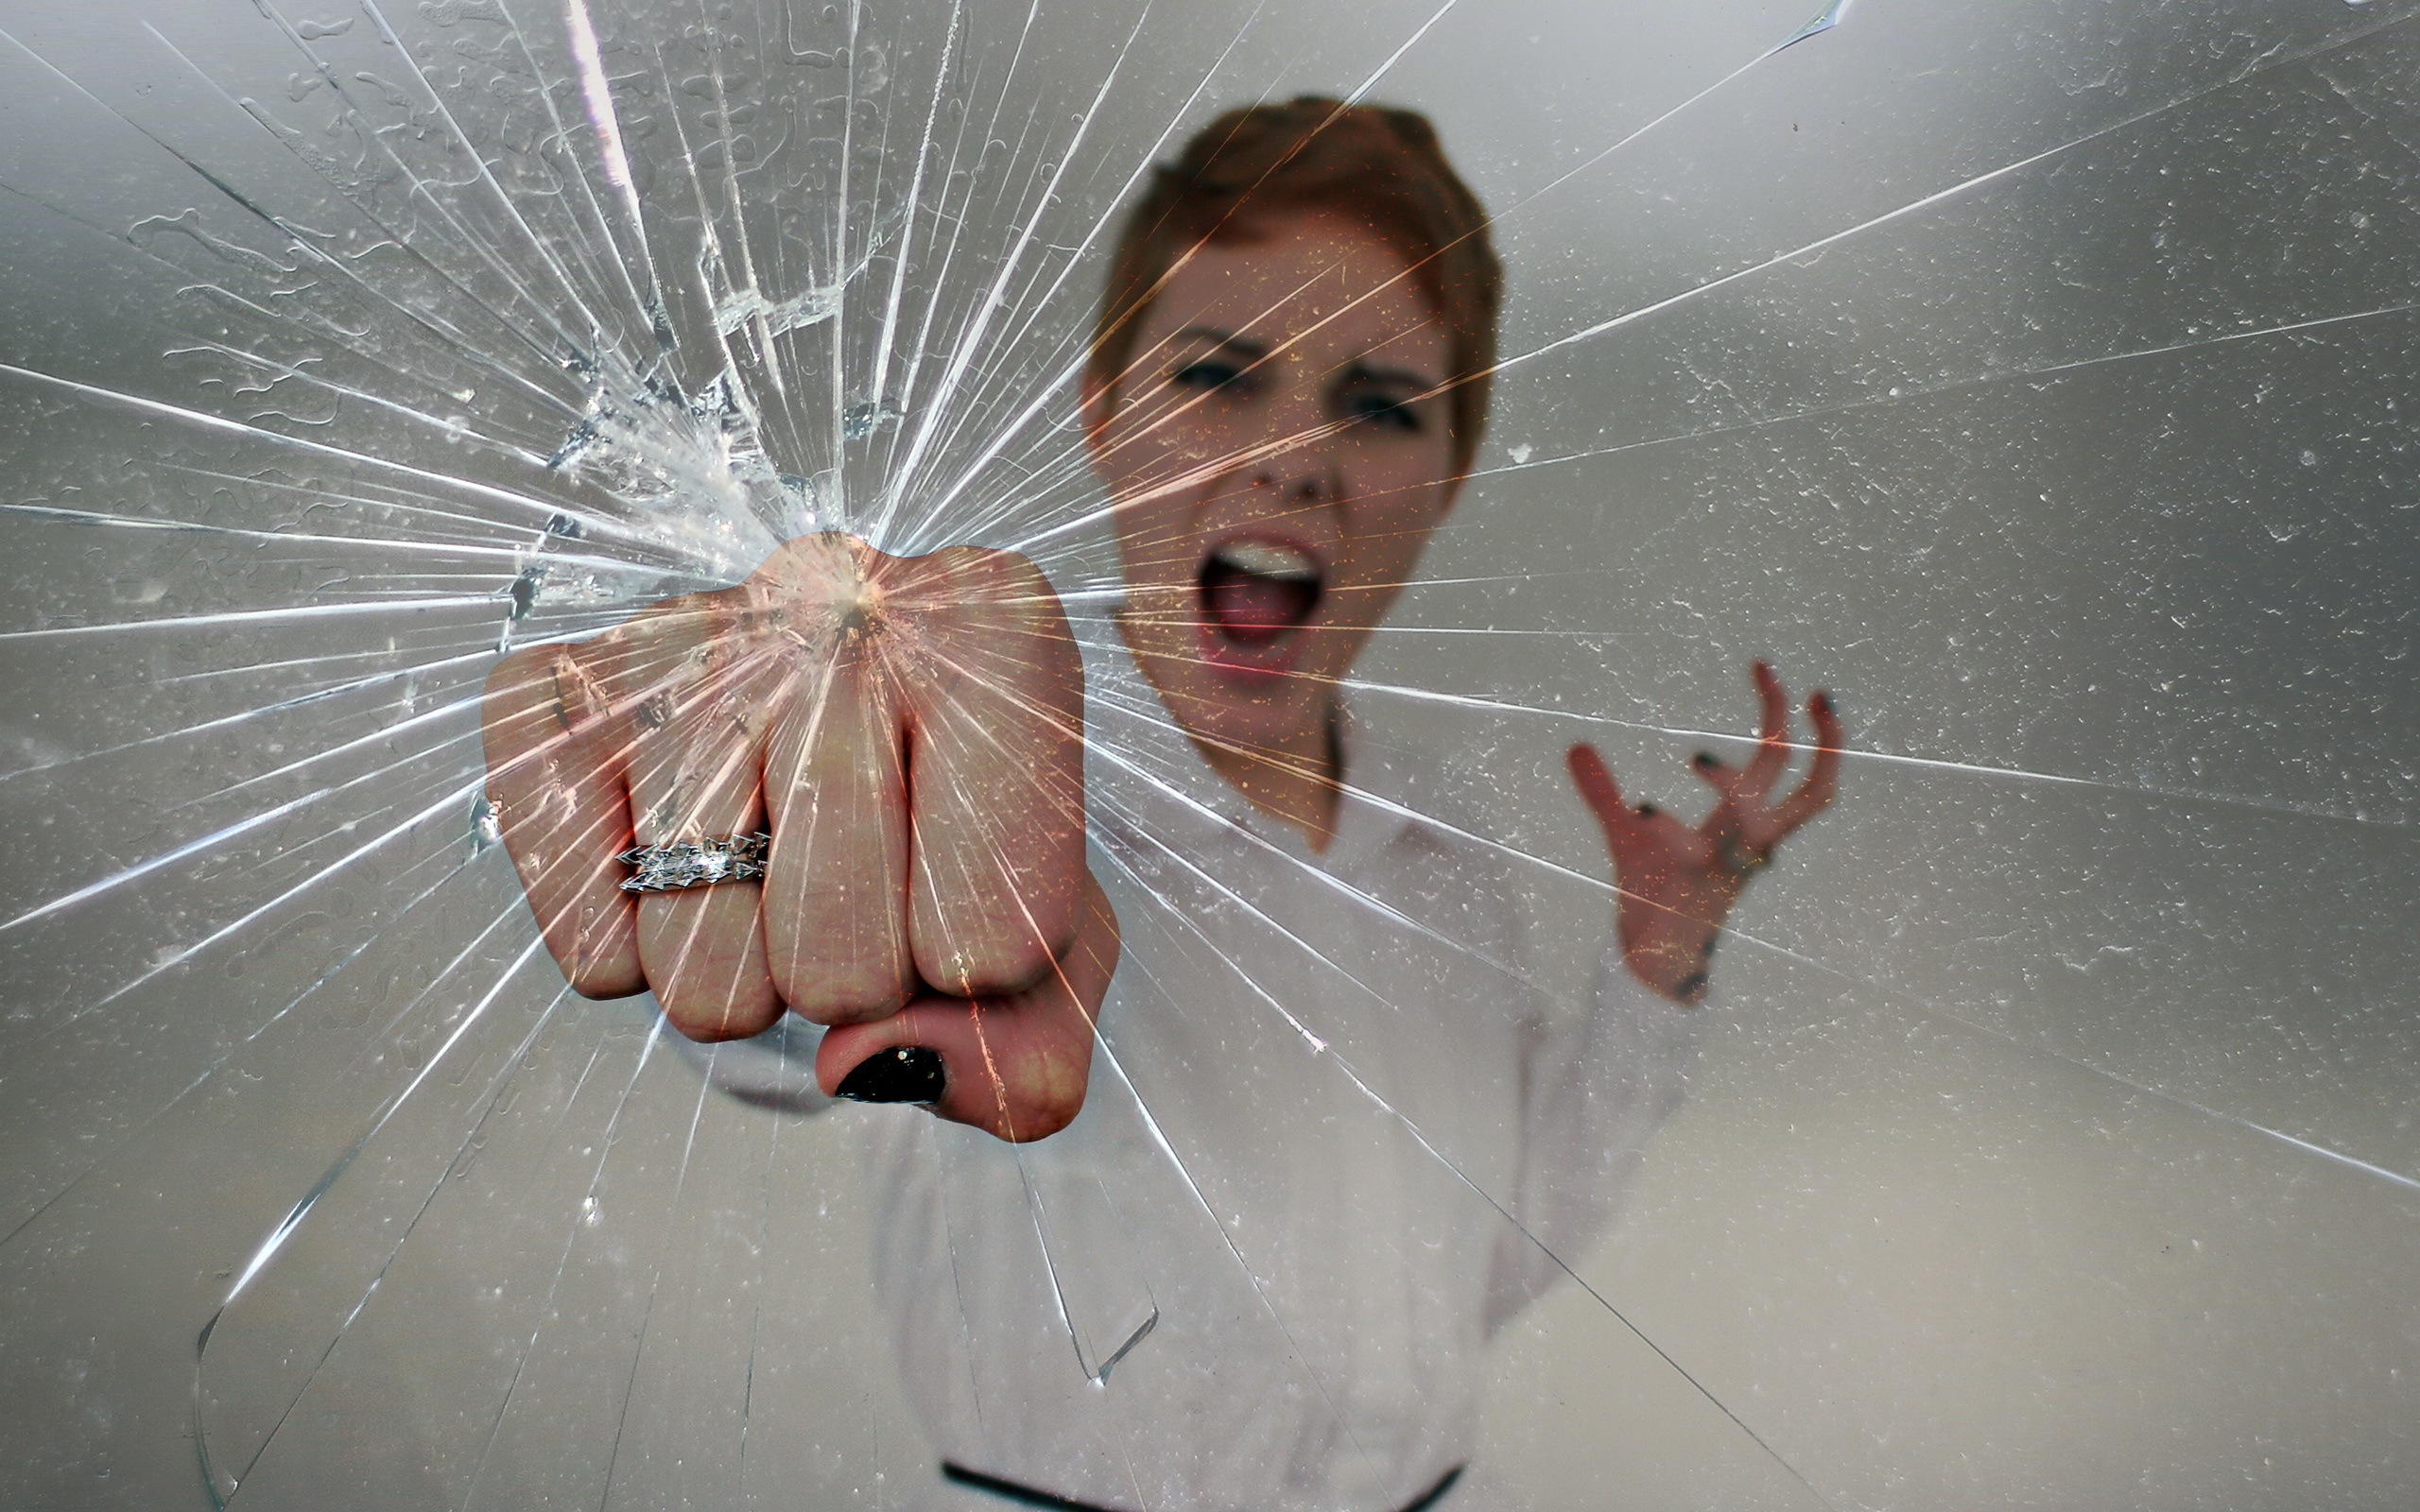 Кидающий стекло. Разбитое стекло. Человек разбивает стекло. Разбить стекло. Фотосессия с разбитым стеклом.